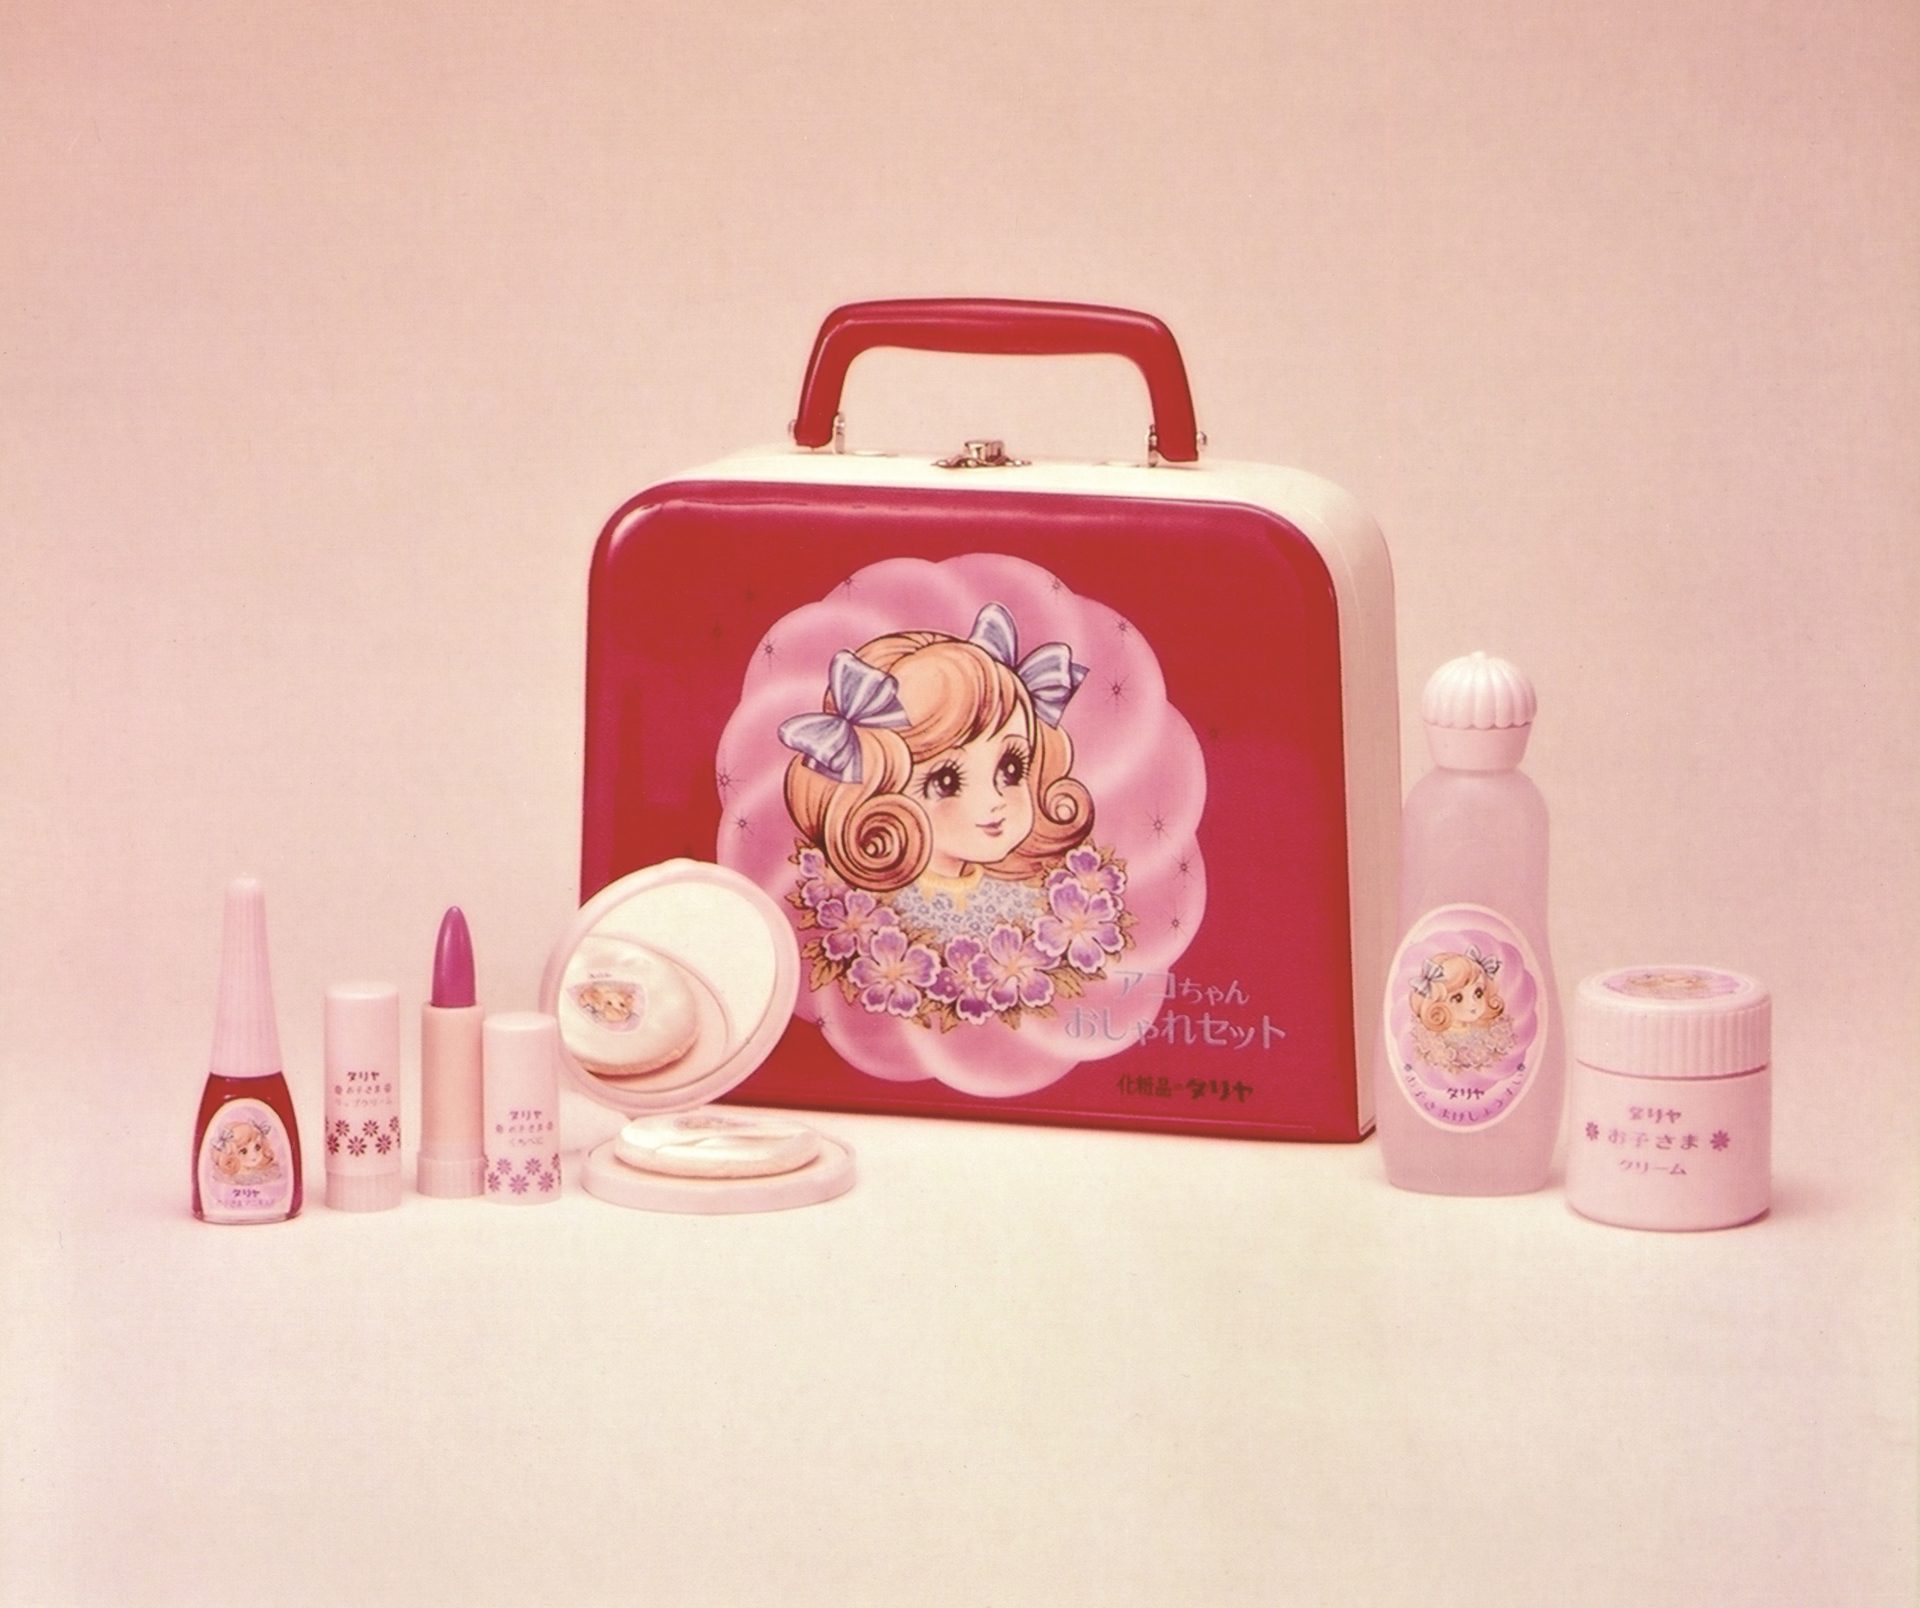 女の子の夢を叶えた“お子様化粧品”『アコちゃんおしゃれセット』 子ども向け化粧品ブームの先駆けに | ラジトピ ラジオ関西トピックス